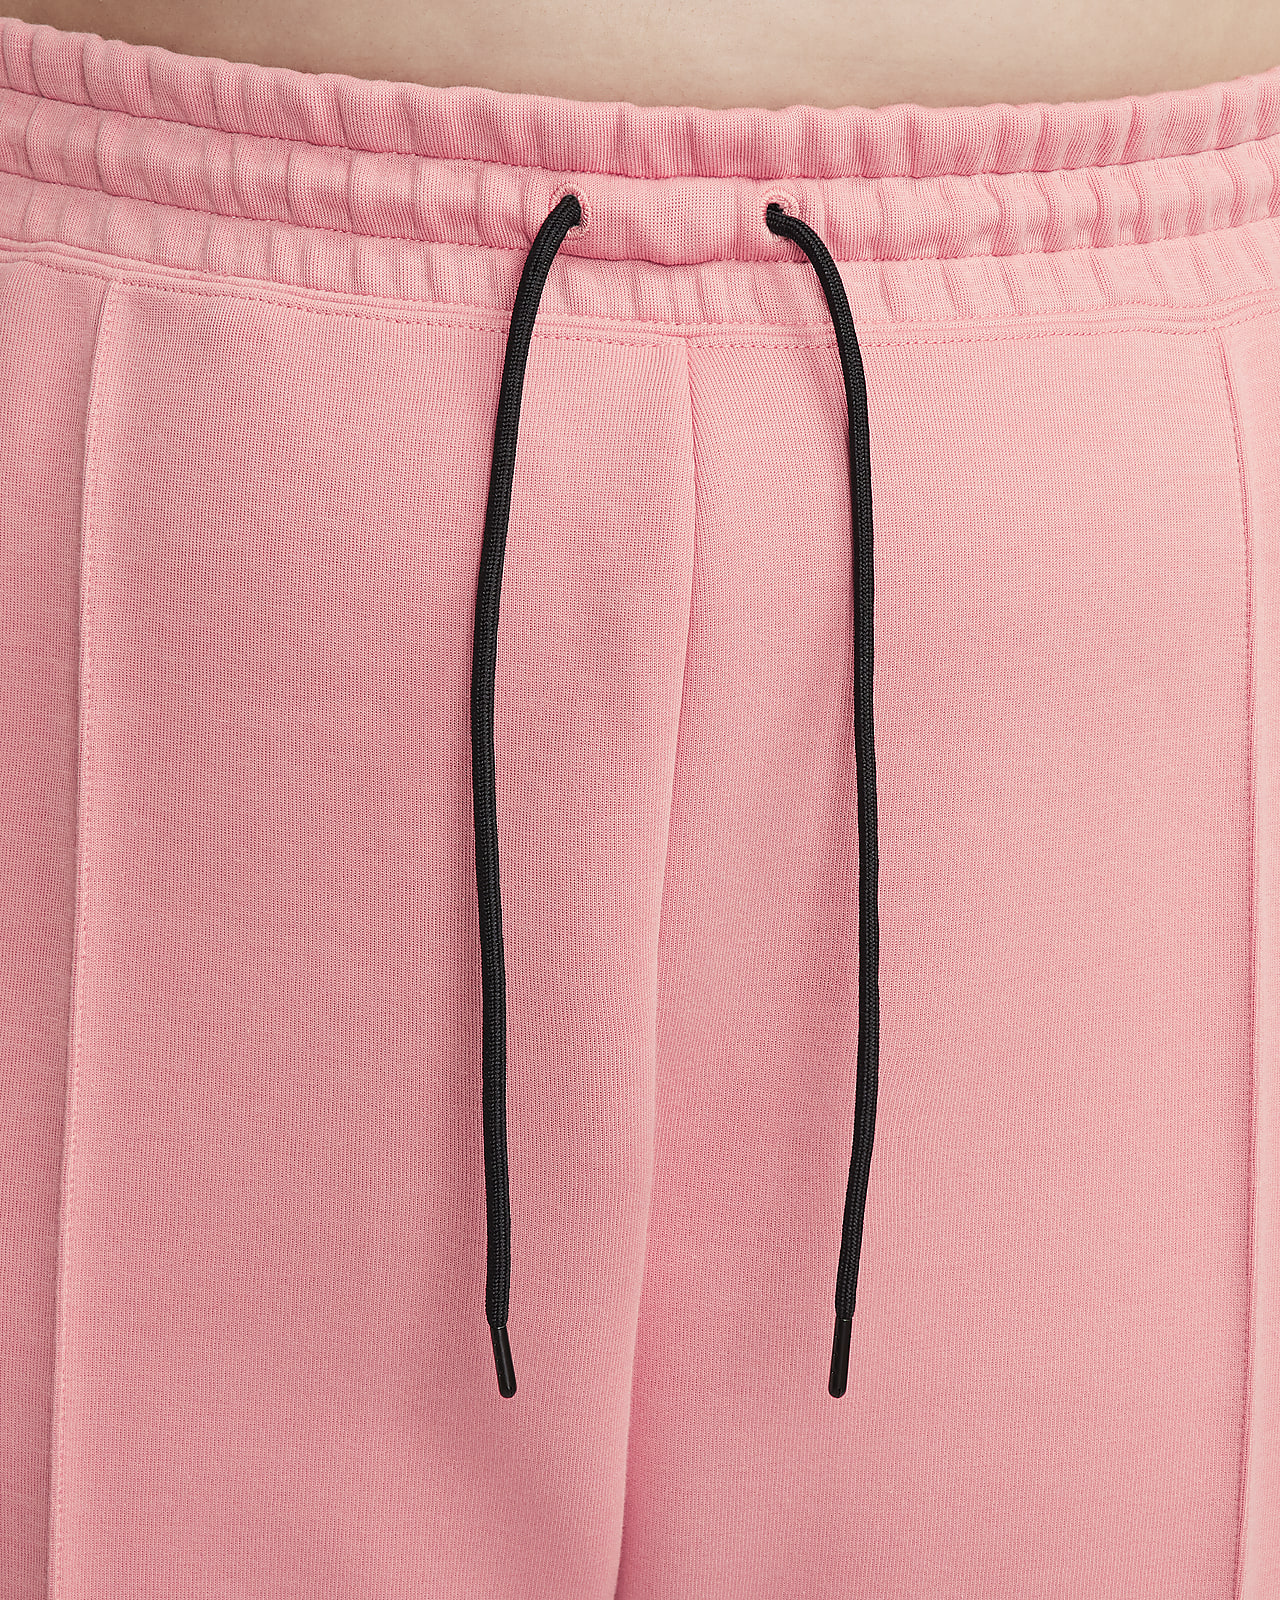 Nike Women's Plus Size Sportswear Fleece Jogger Sweatpants Pants (Pink, 3X)